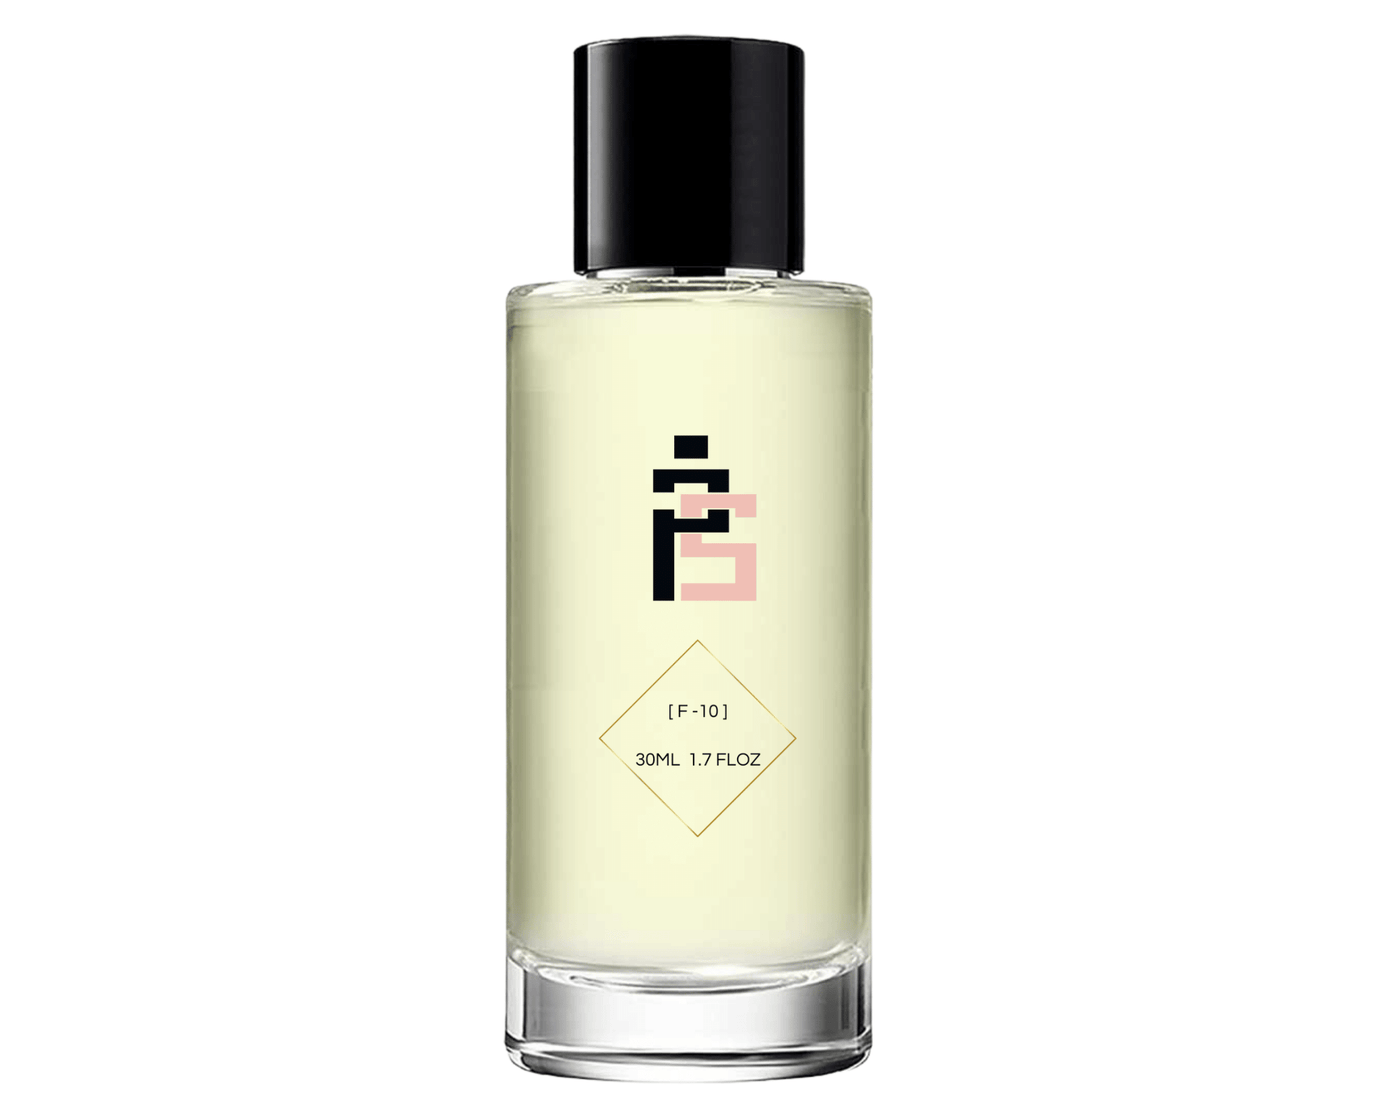 Parfum - F10 | similaire à Addict